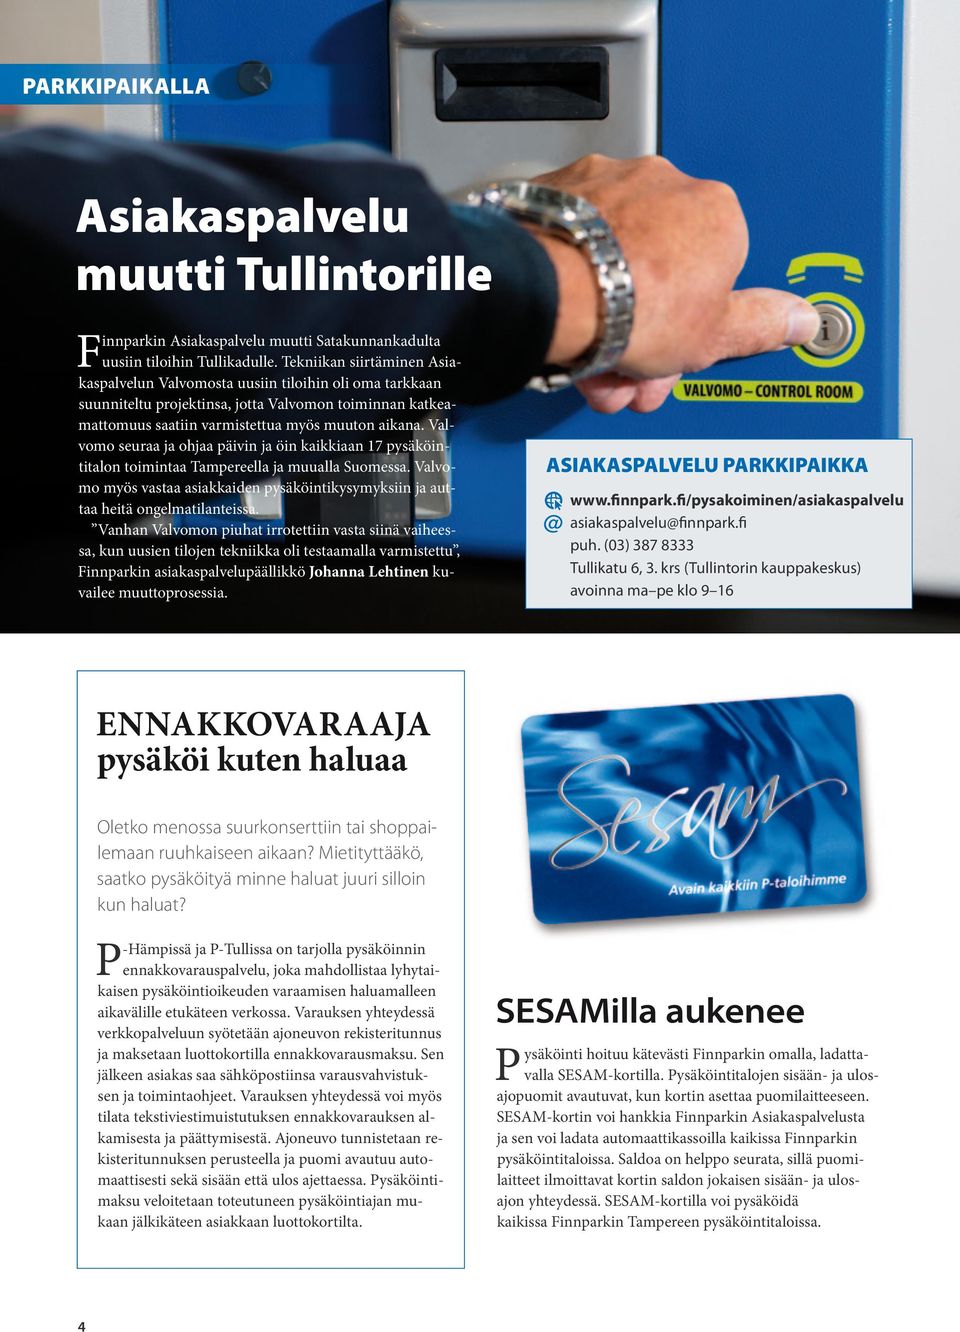 Valvomo seuraa ja ohjaa päivin ja öin kaikkiaan 17 pysäköintitalon toimintaa Tampereella ja muualla Suomessa. Valvomo myös vastaa asiakkaiden pysäköintikysymyksiin ja auttaa heitä ongelmatilanteissa.